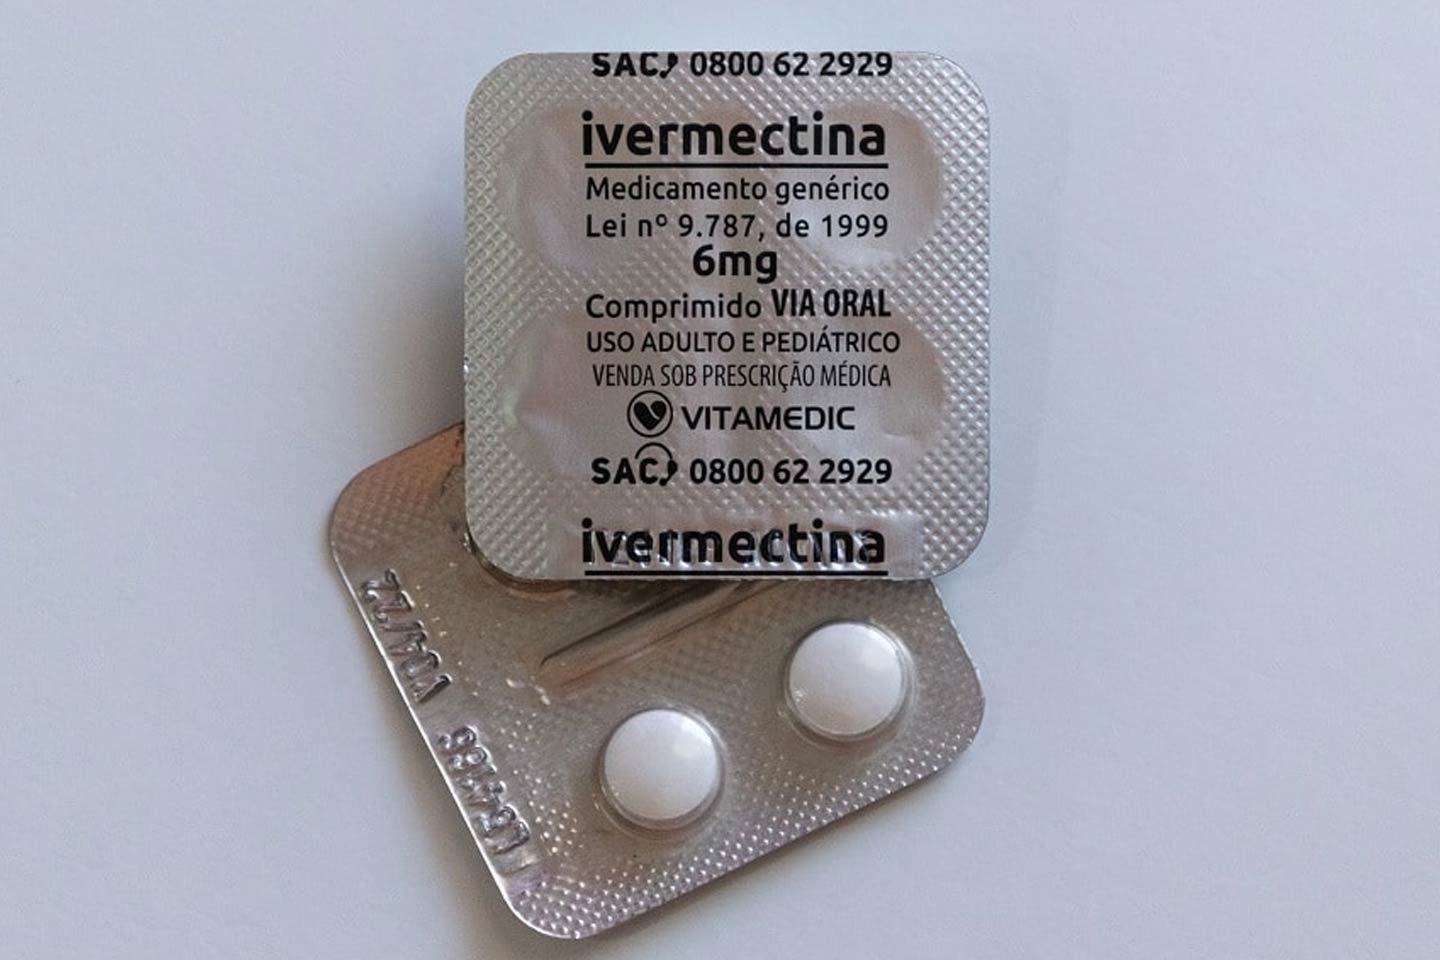 Estudo: Ivermectina é inútil ao Covid-19 e pode causar grave diarreia